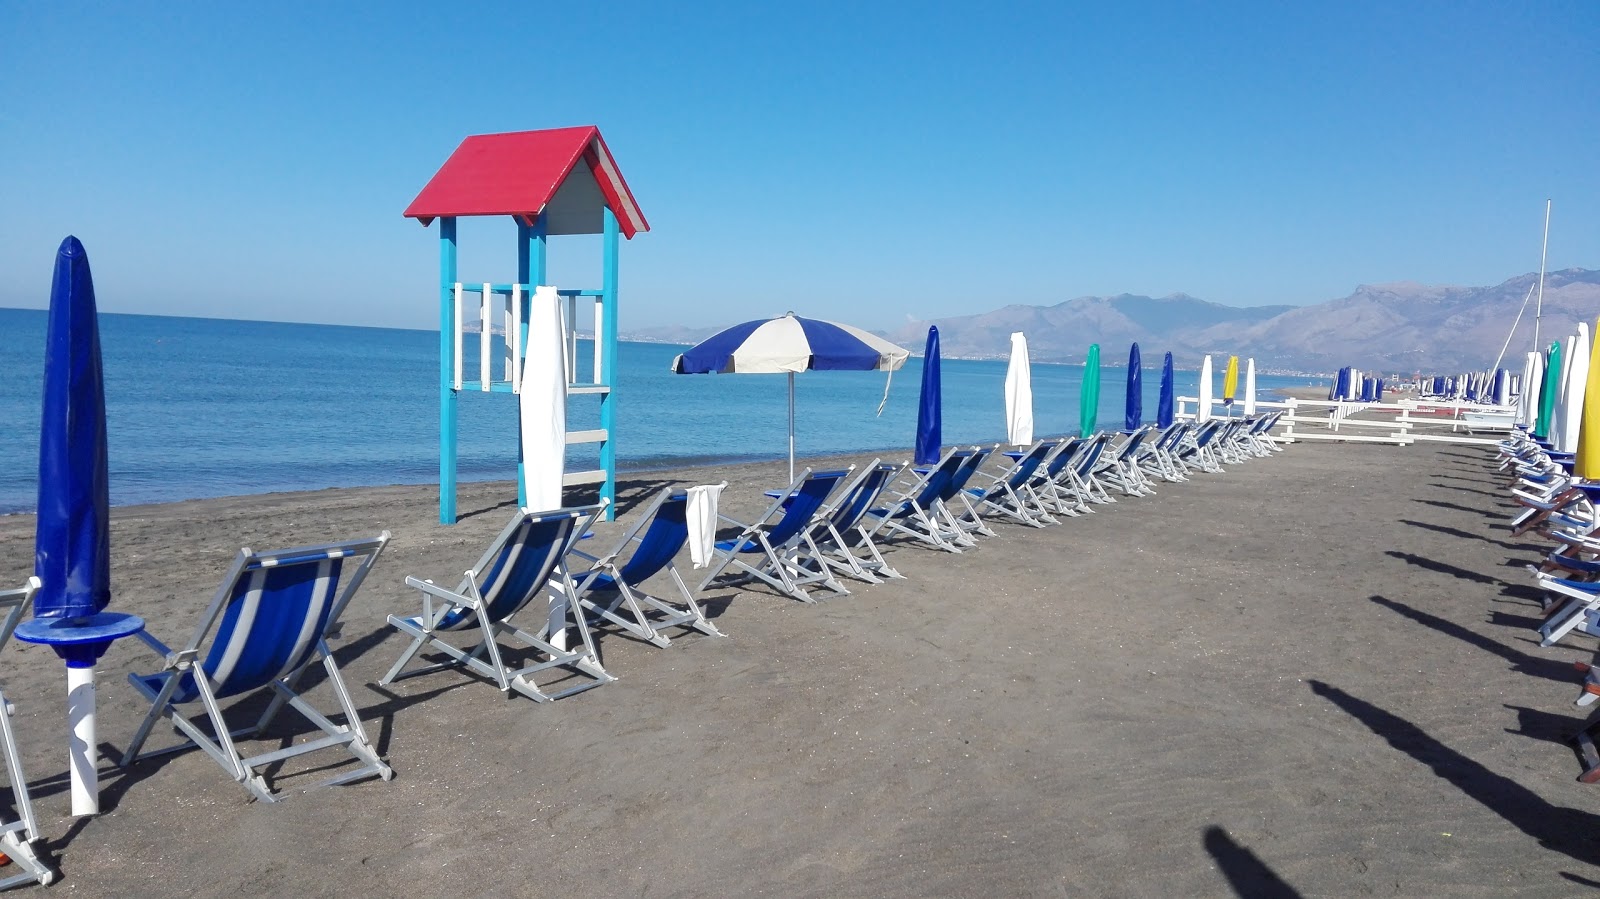 Baia Domizia beach'in fotoğrafı - rahatlamayı sevenler arasında popüler bir yer